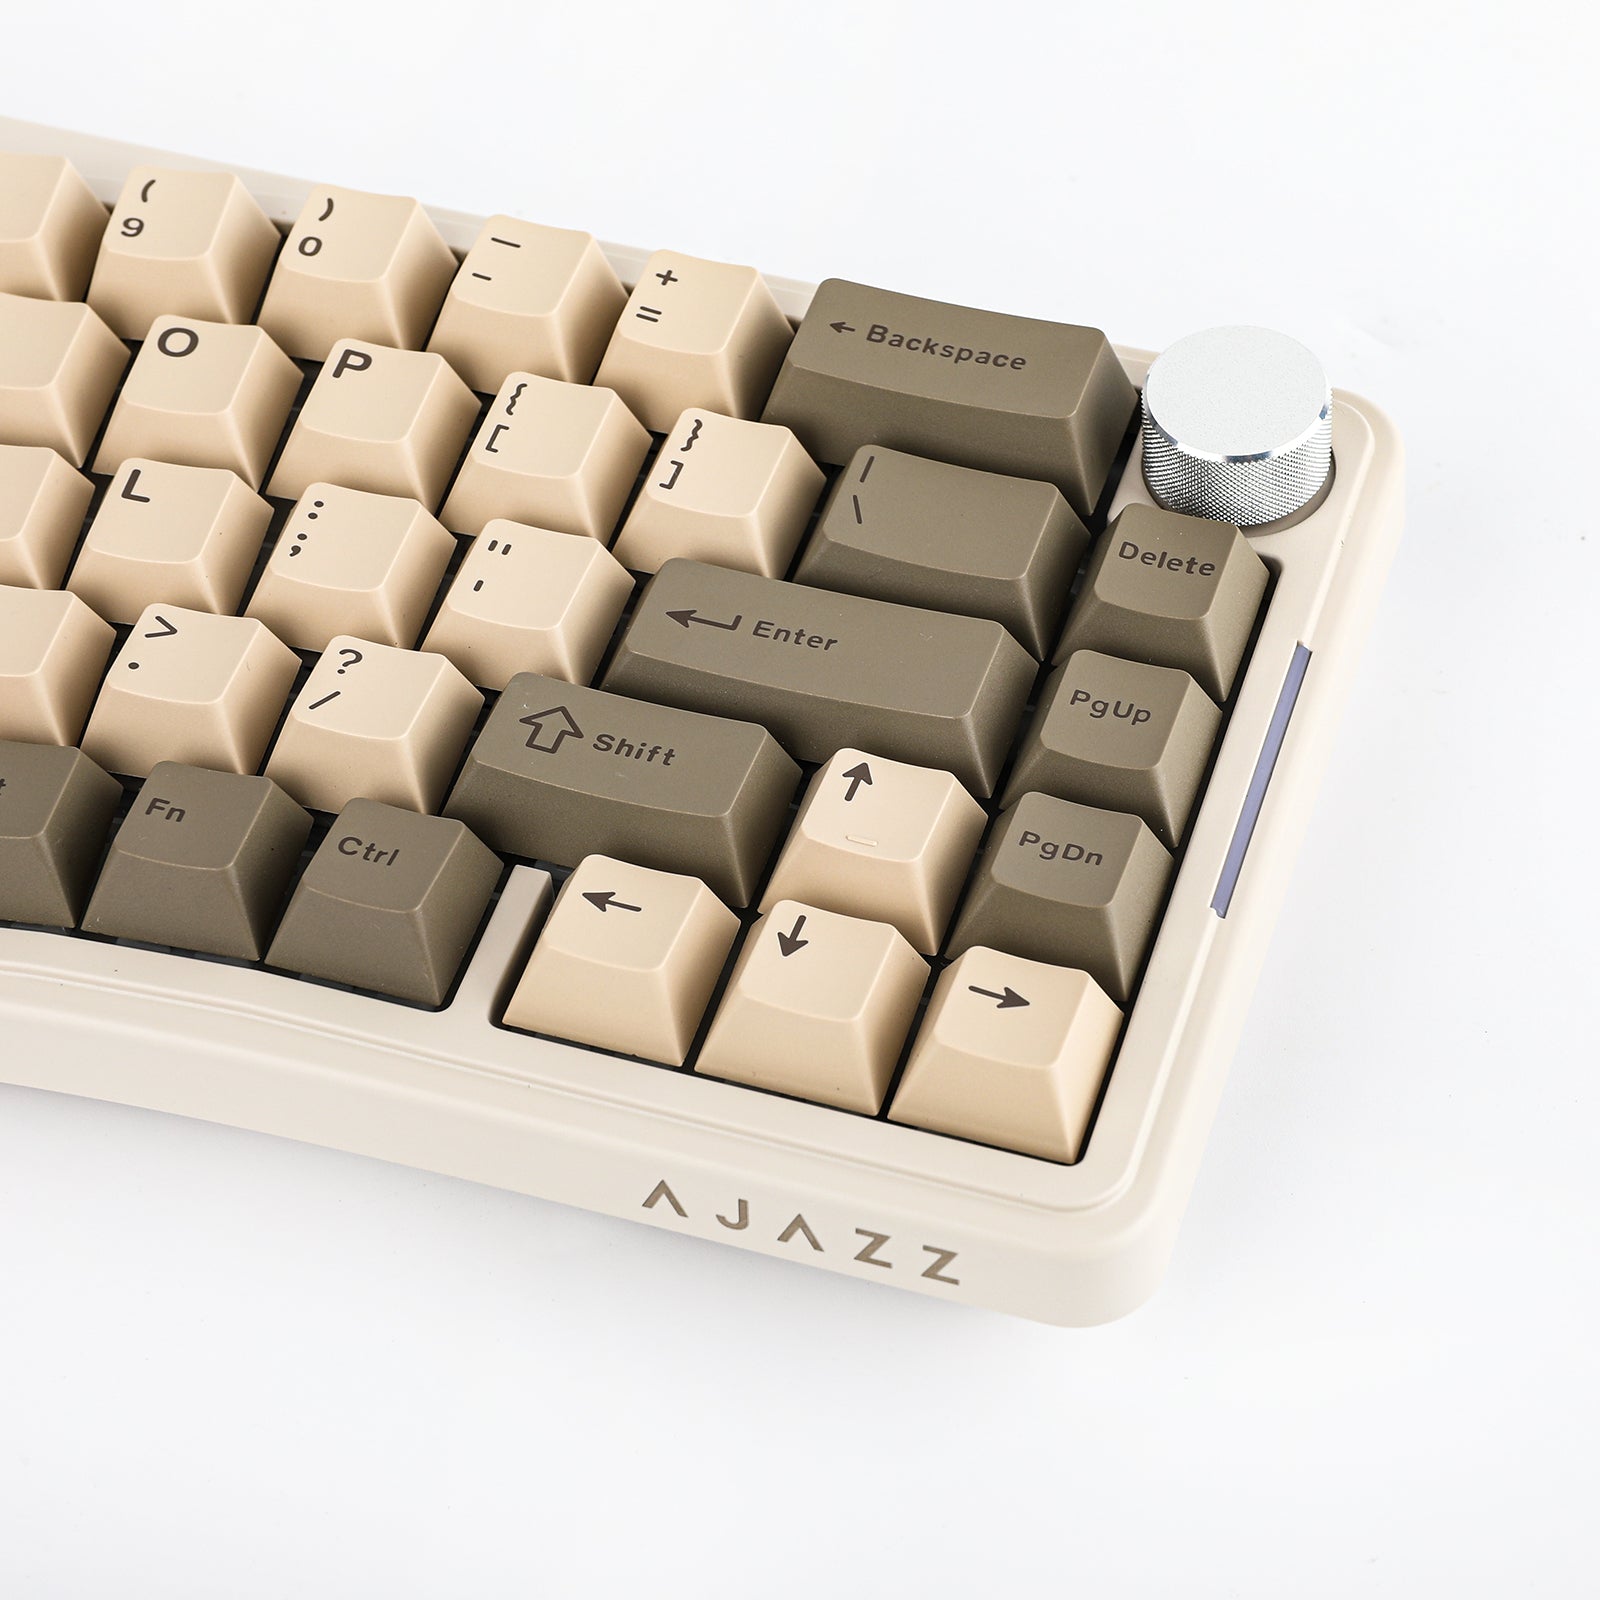 Ajazz AK816 Pro – ajazz keyboard